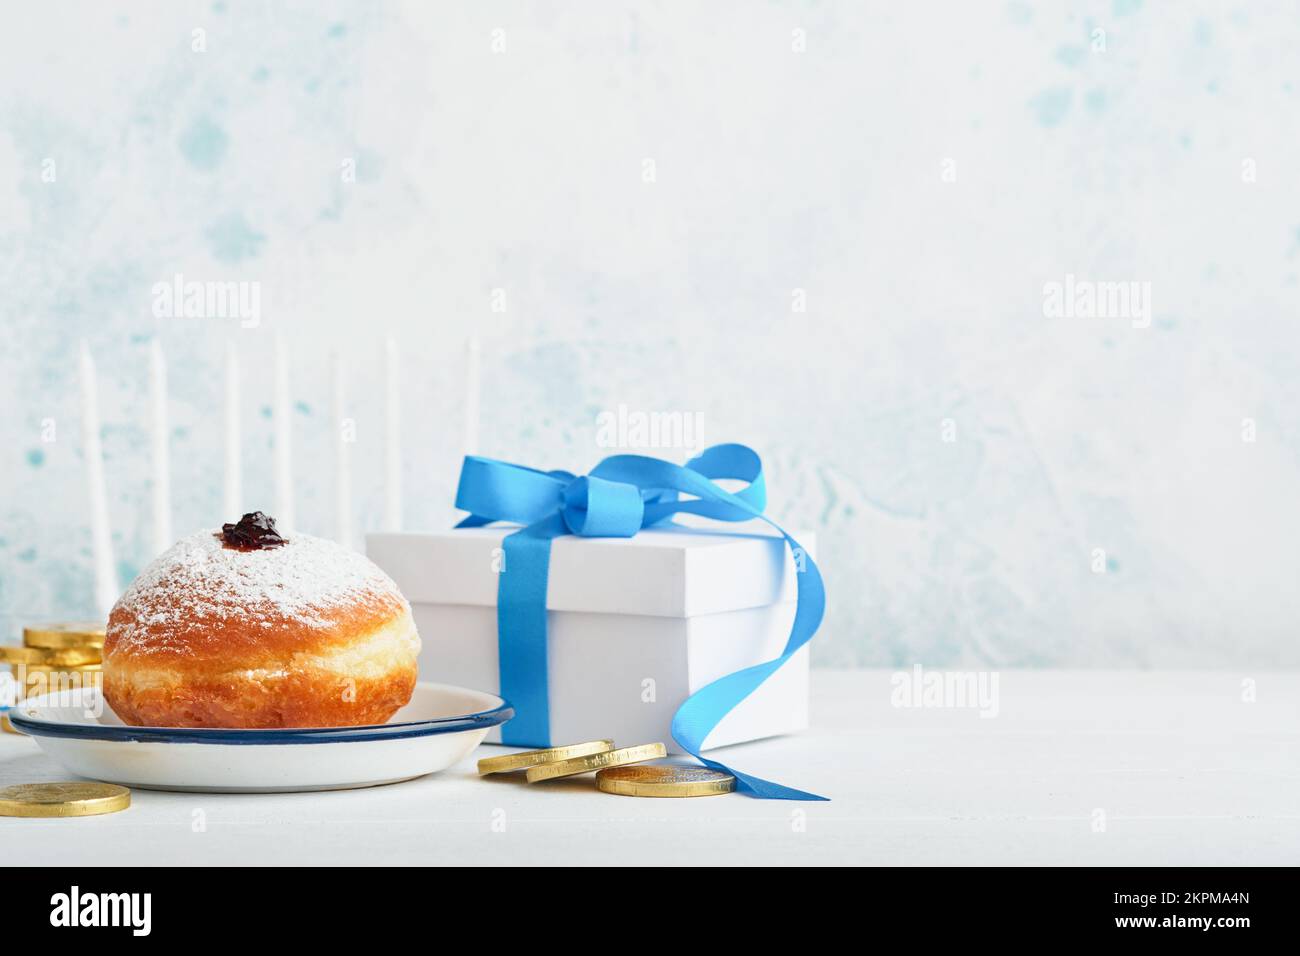 Frohes Chanukka. Süße Hanukka-Donuts, Geschenkschachteln, weiße Kerzen und Schokoladenmünzen auf weißem Holzhintergrund. Bild und Begriff jüdischer Holida Stockfoto